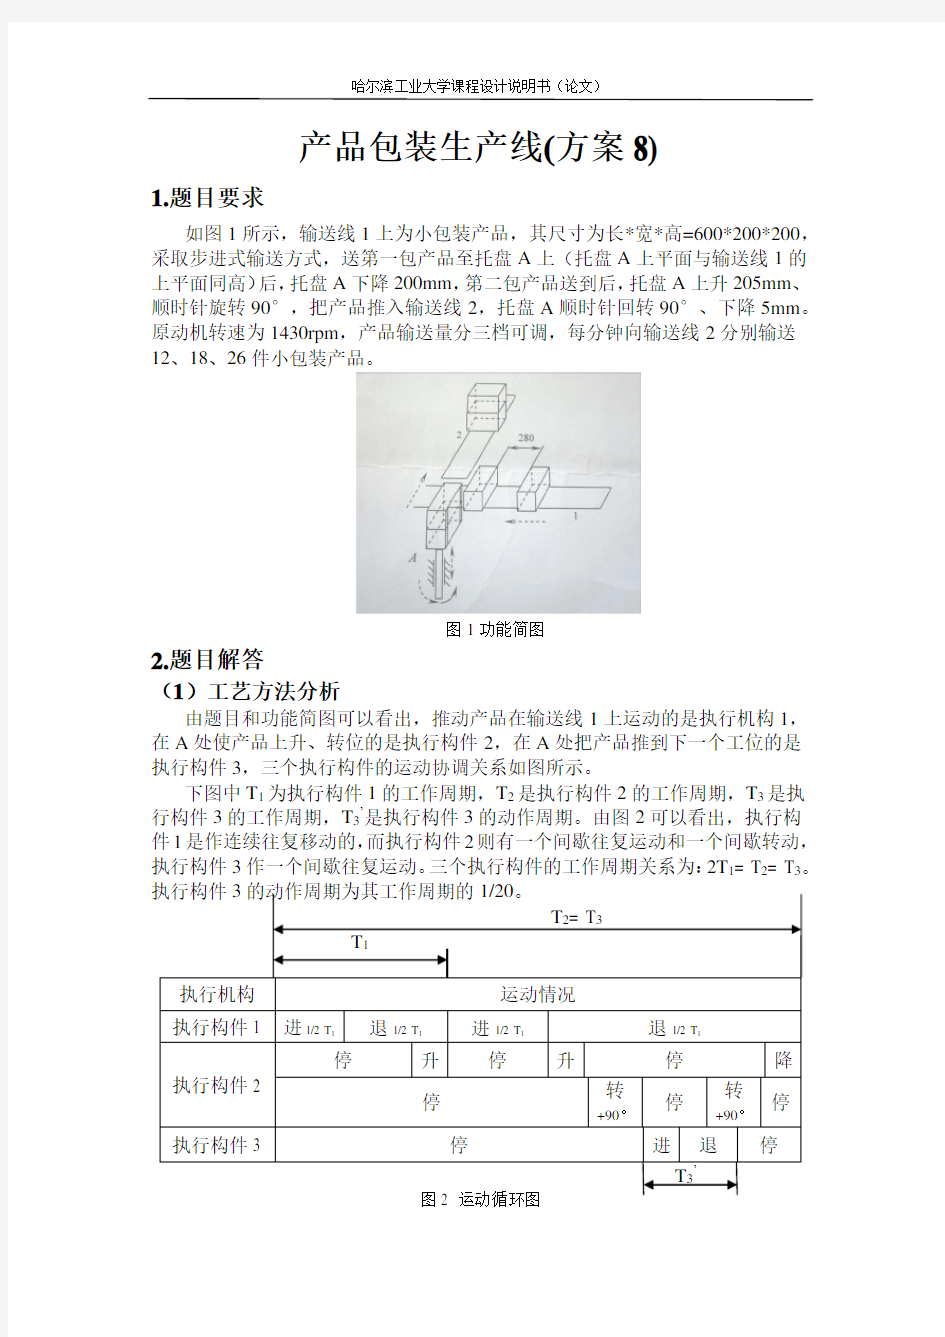 哈工大机械原理课程设计—产品包装线设计(方案8)